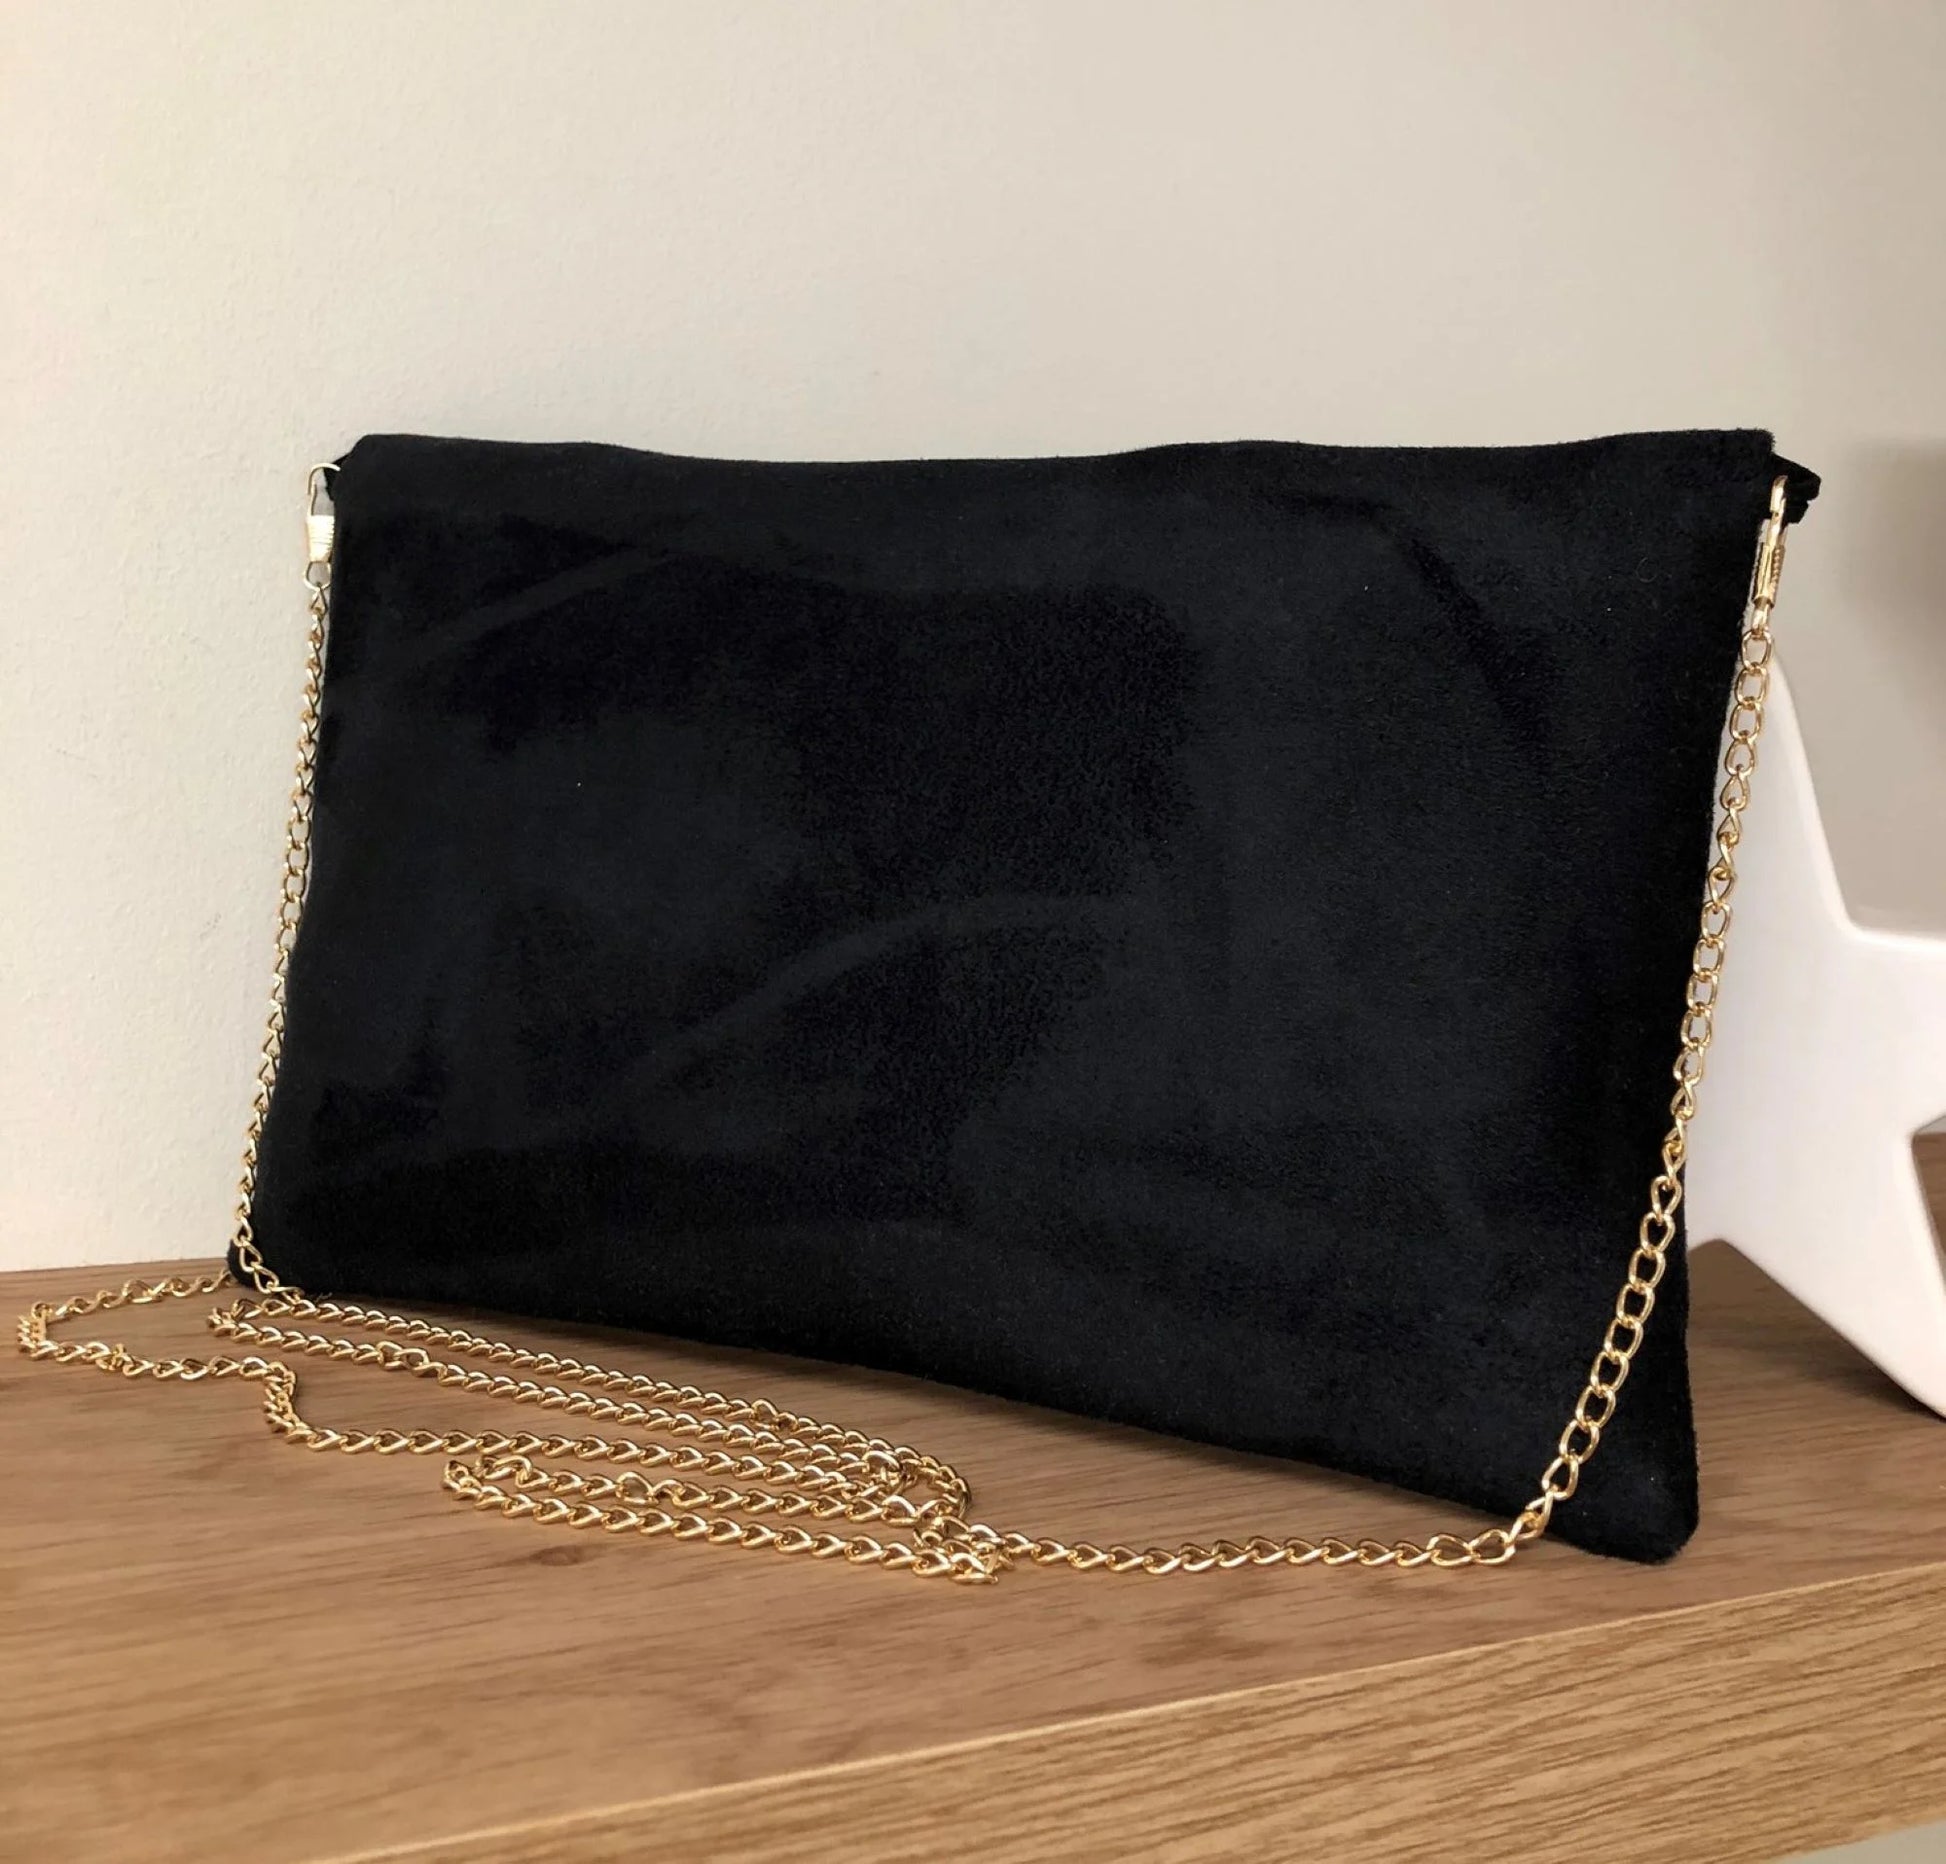 Le dos du sac pochette Isa noir à paillettes dorées, avec chainette amovible.